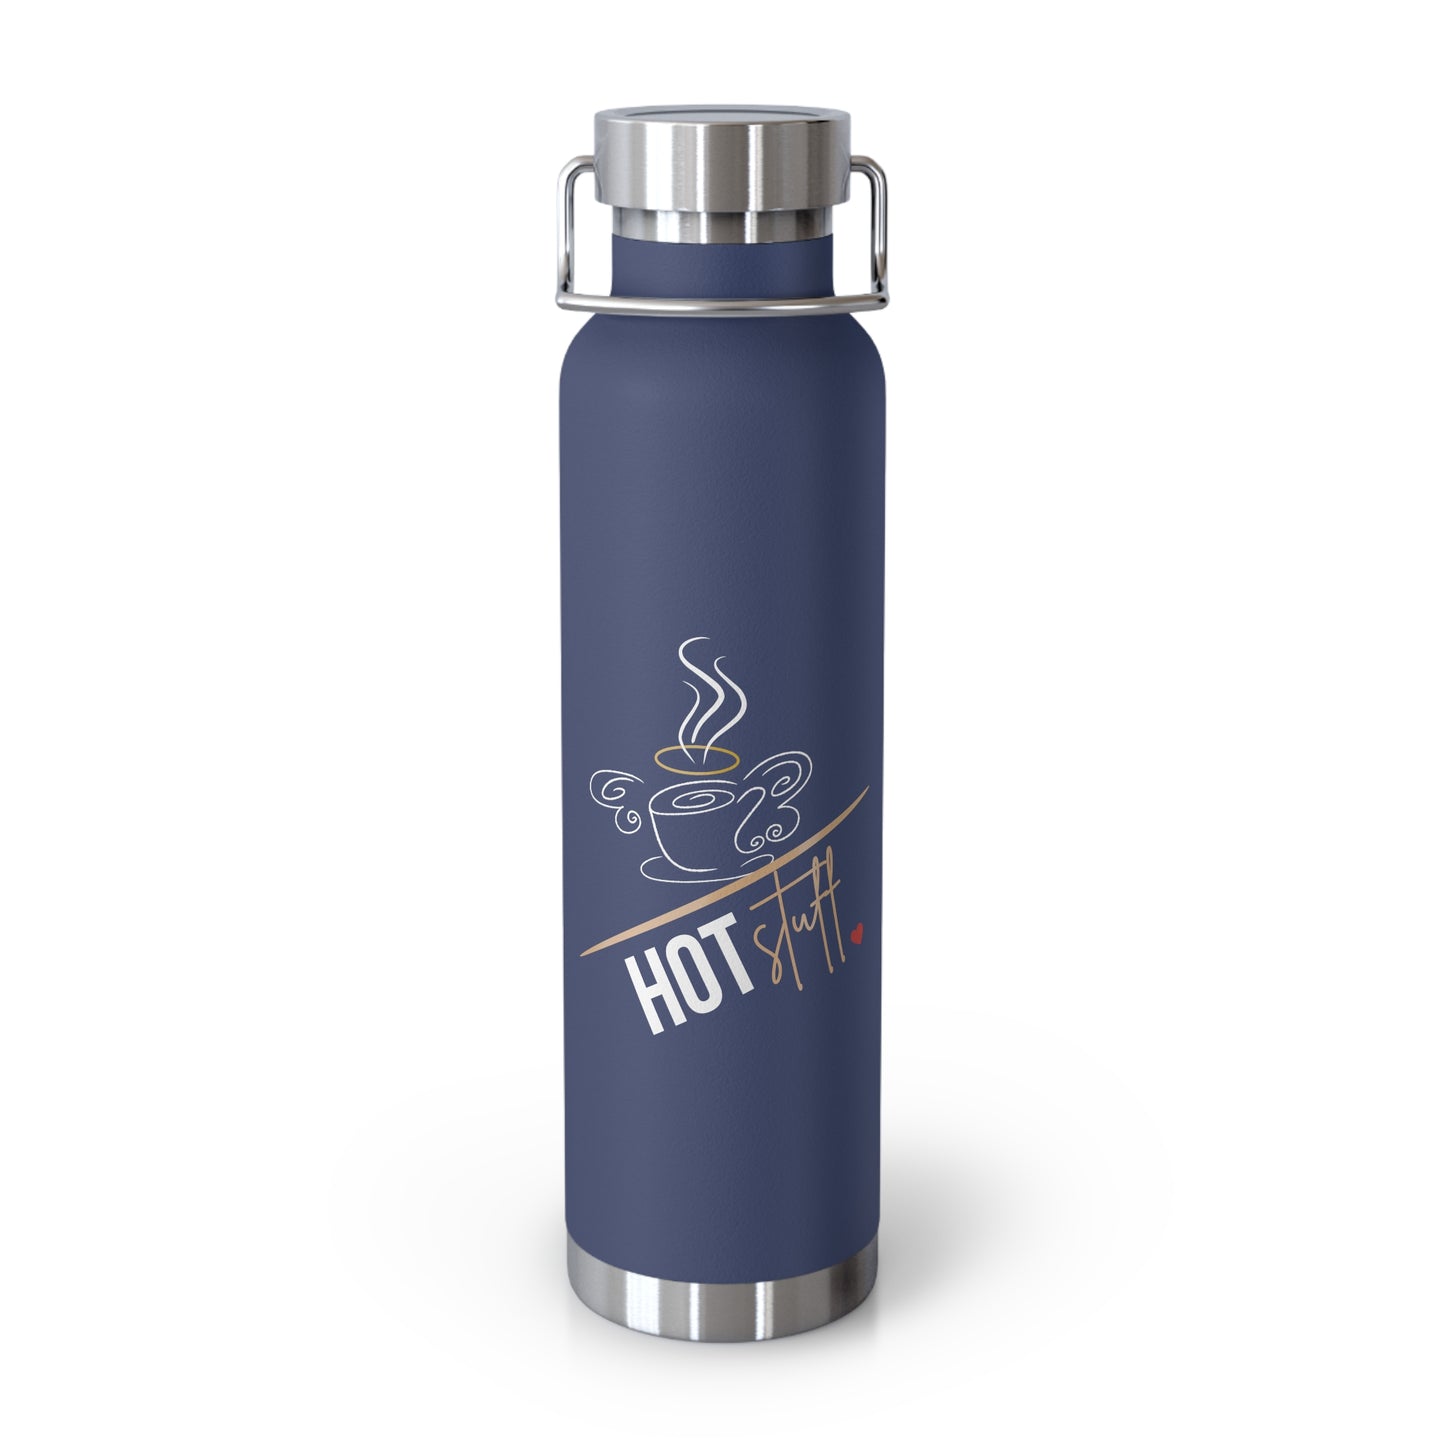 A "Hot Stuff!" Copper Vacuum Insulated Bottle, 22oz